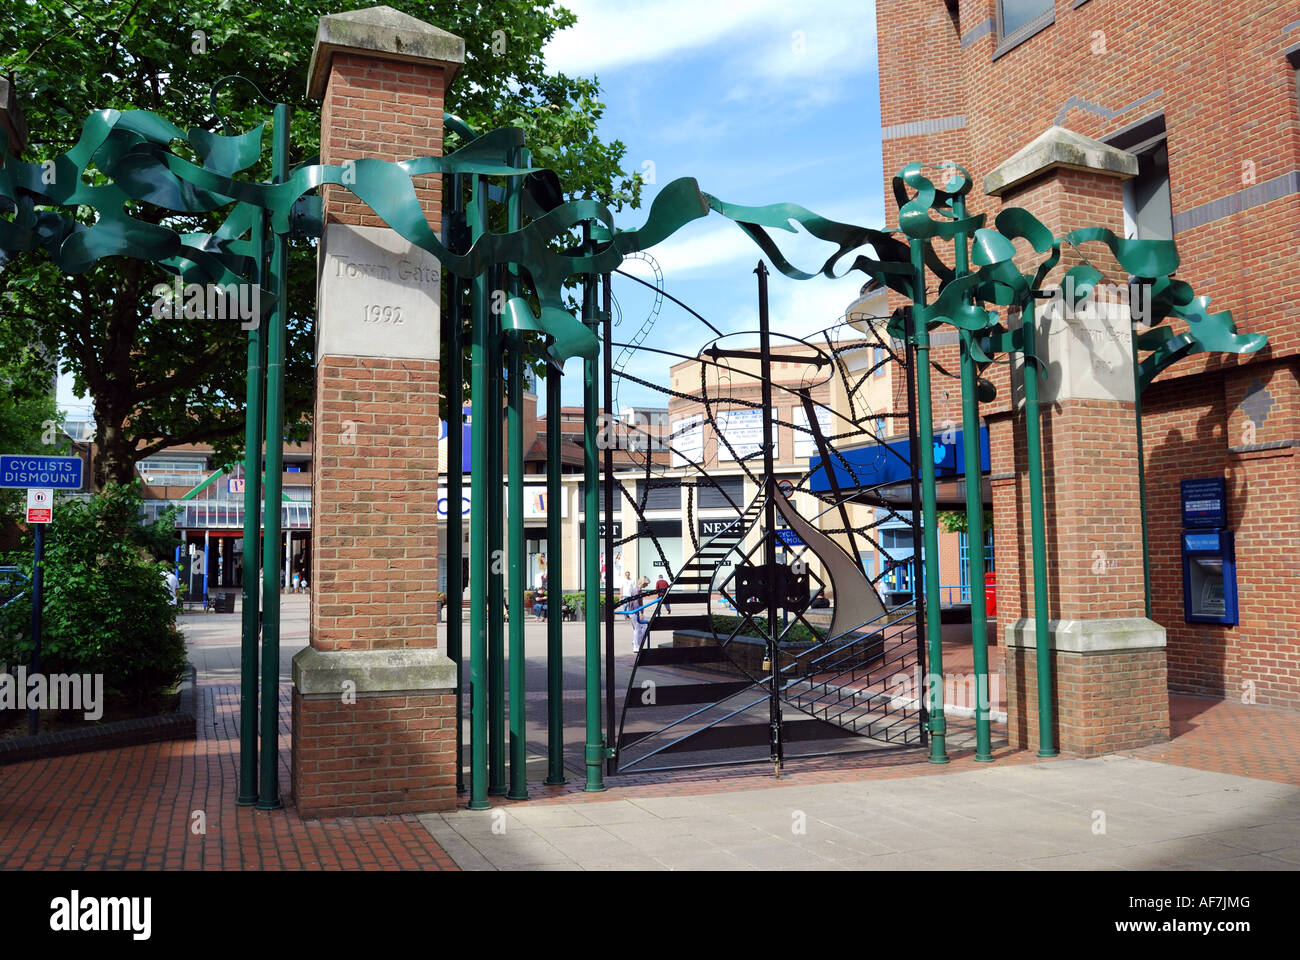 'La Porte' conçu par Alan Dawson, Town Square, Woking, Surrey, Angleterre, Royaume-Uni Banque D'Images